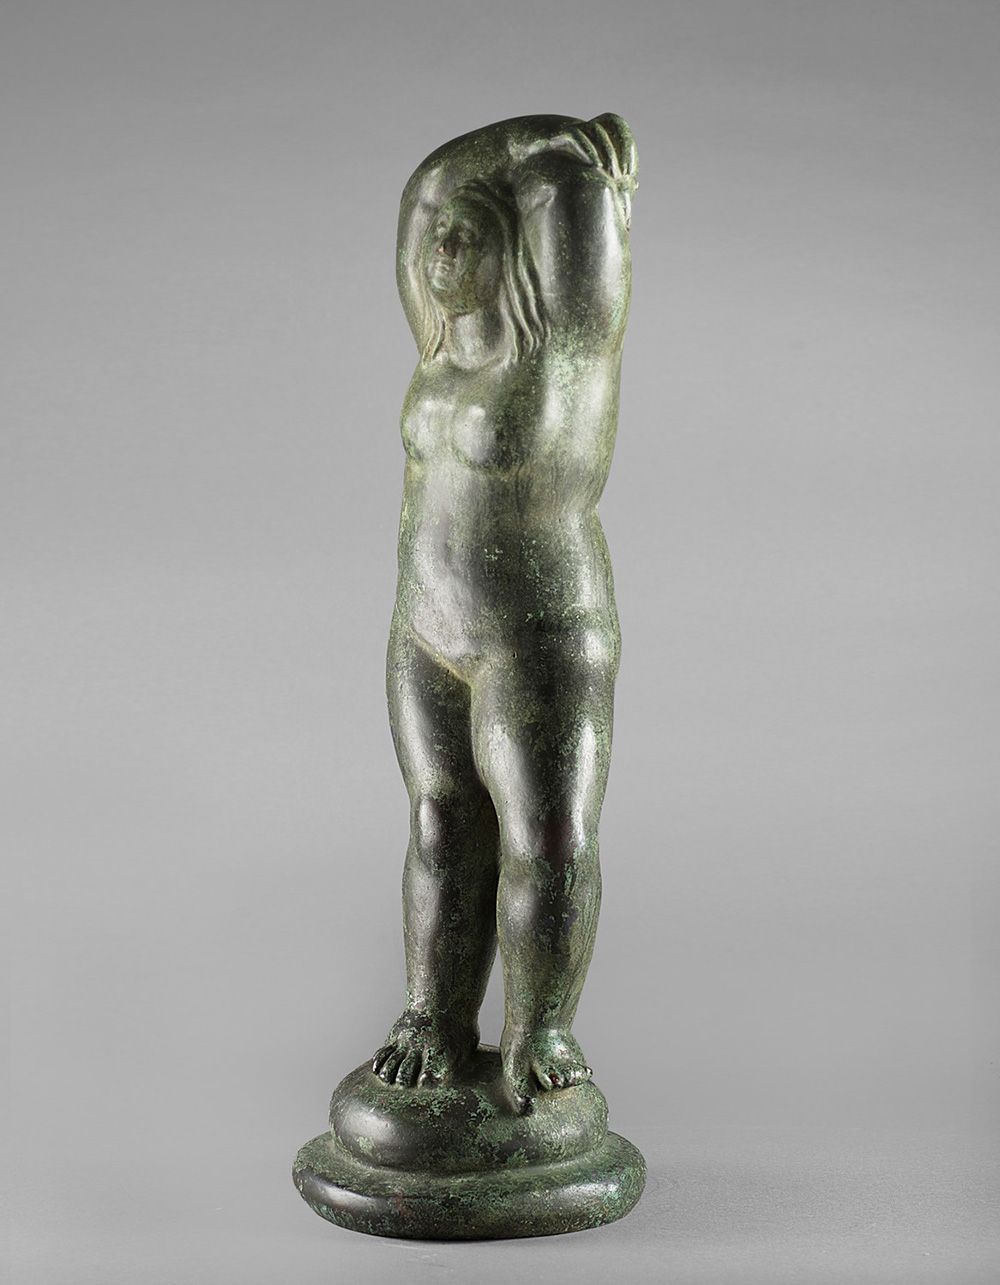 Arturo Martini (18891947), Fecondità, 1921, bronzo, cm 65,5x17x13